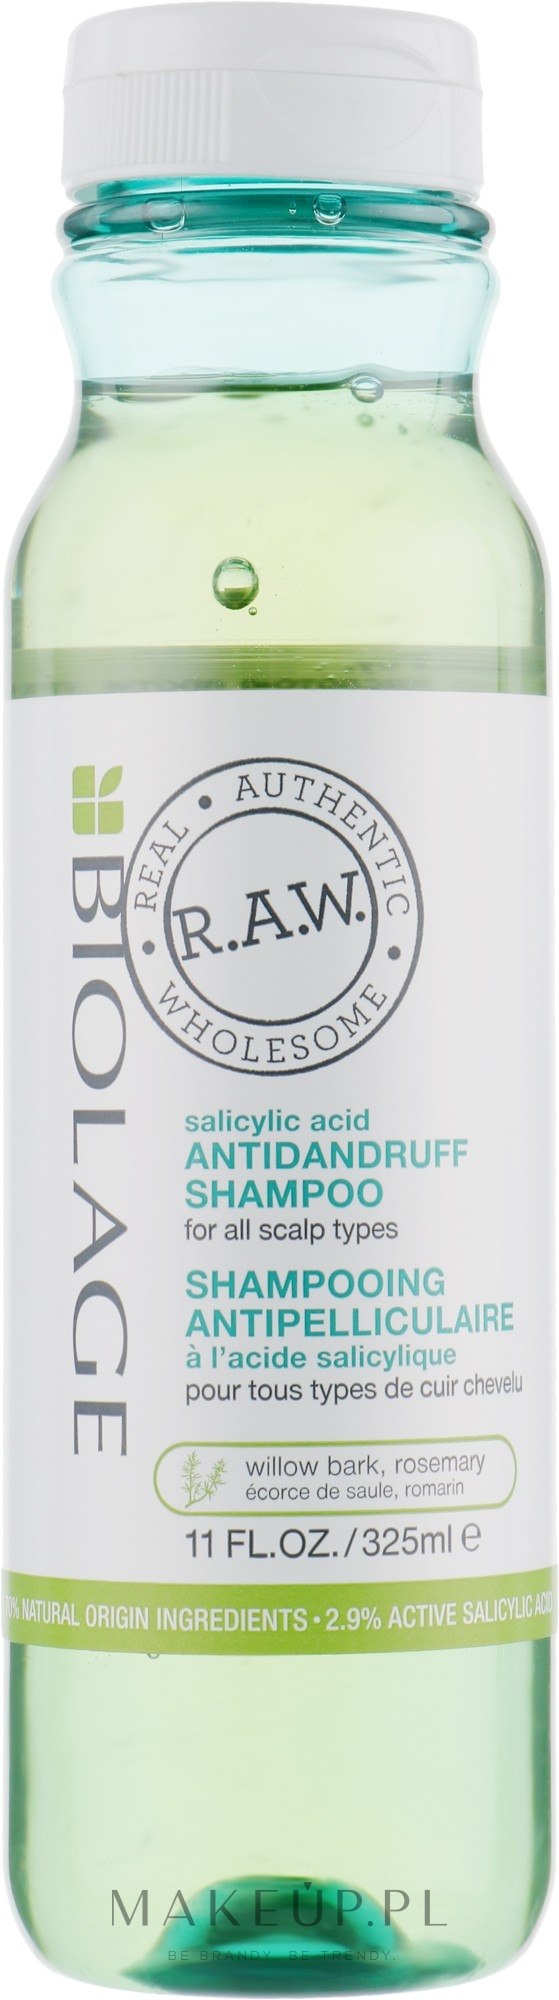 biolage raw szampon wizaz